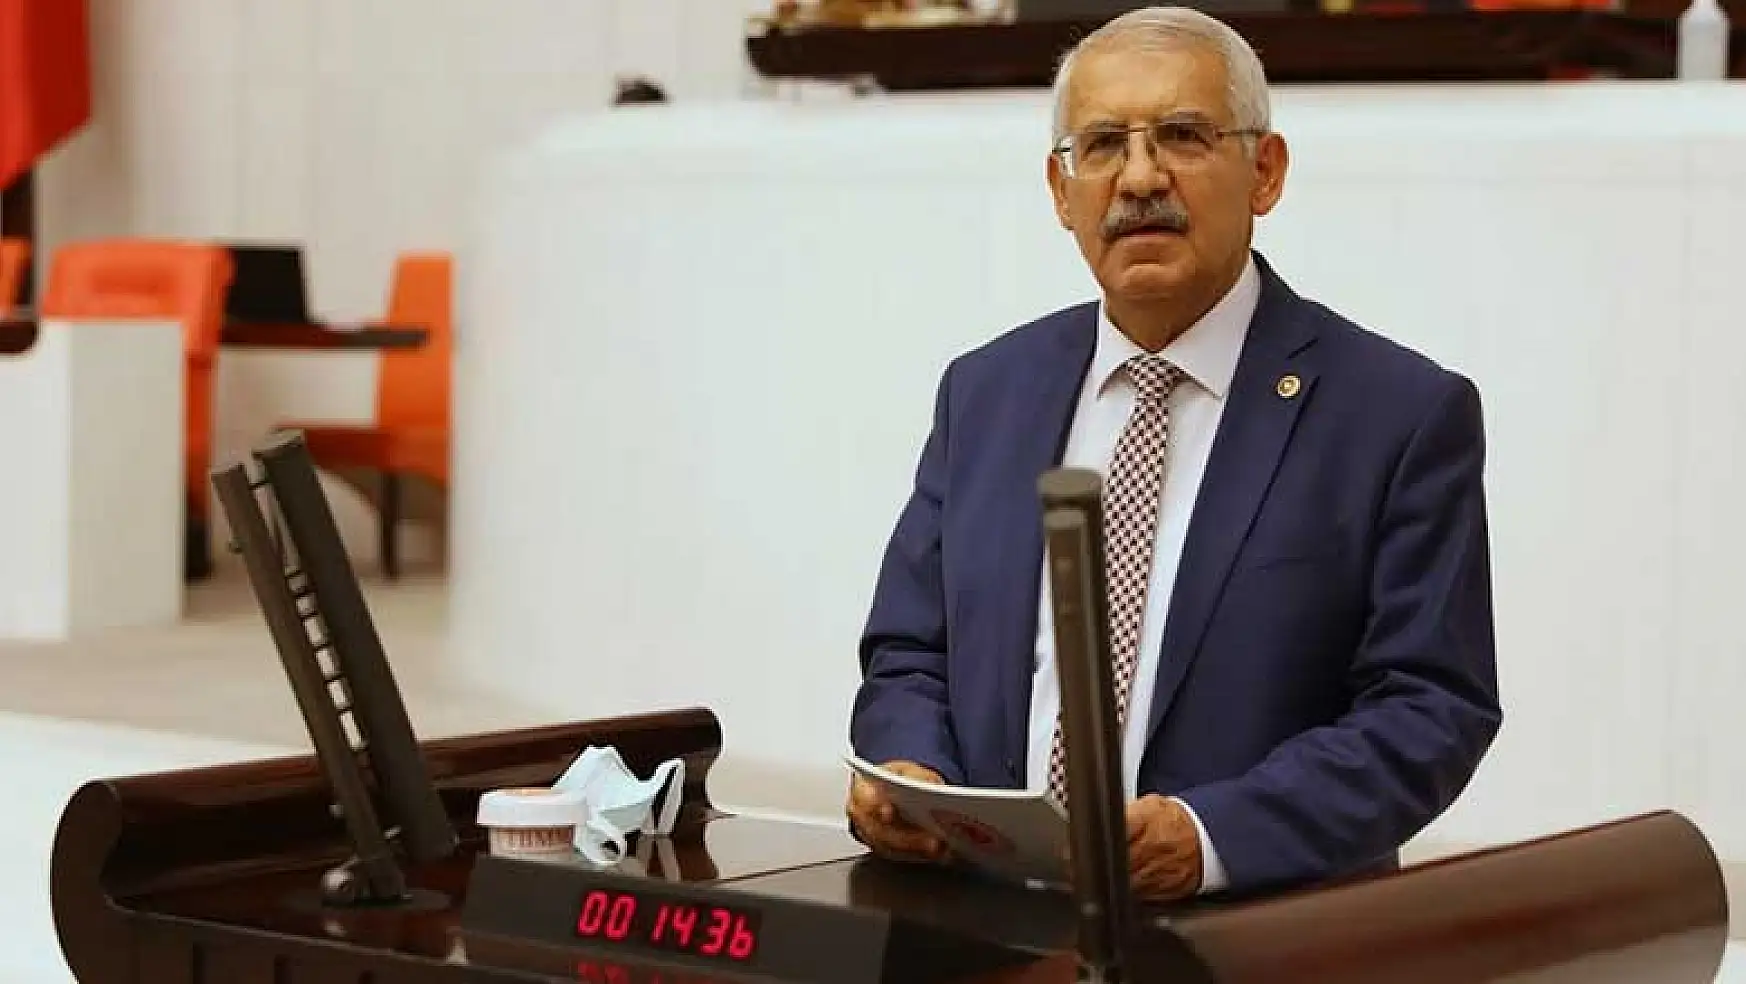 Konya Milletvekili Fahrettin Yokuş'un hayvan hakları araştırma önergesi reddedildi